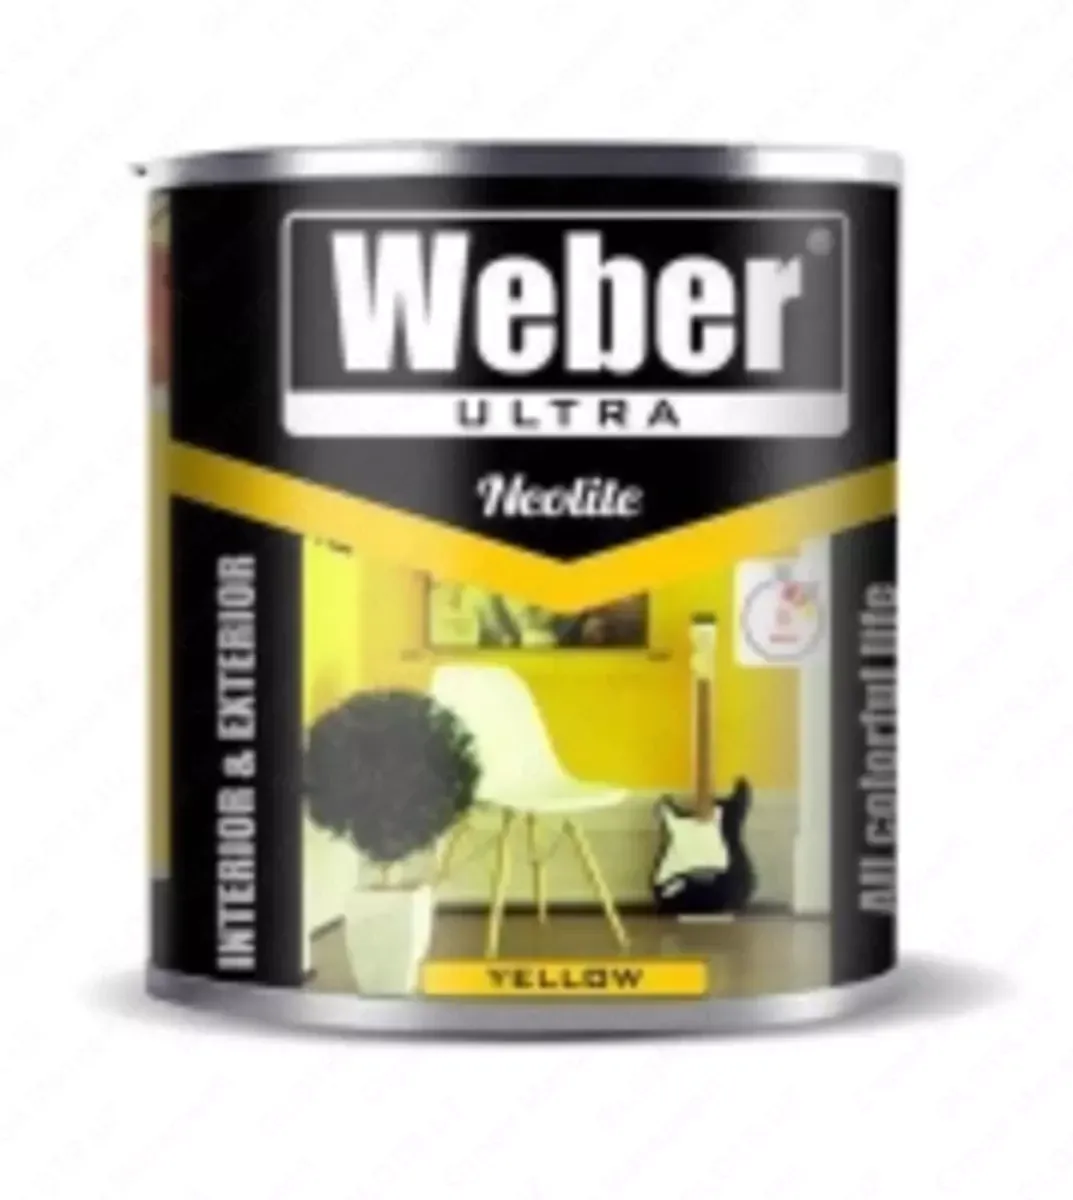 Weber 2,5 kg sariq rangga bo'yalgan#2